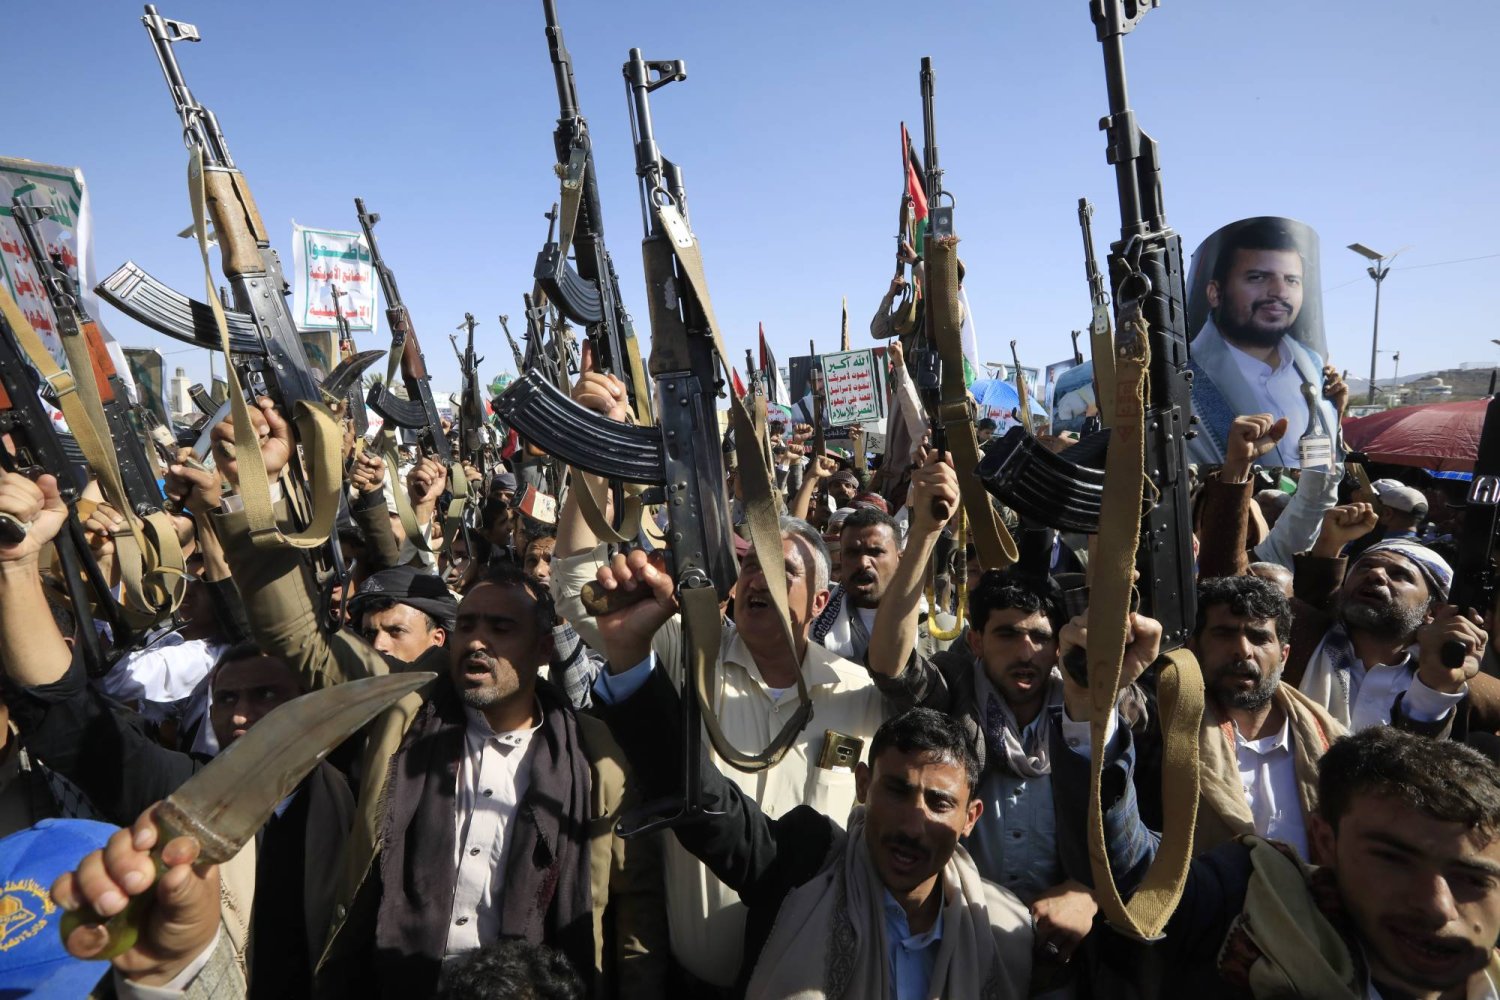 خبراء: الحوثيون يقمعون معارضيهم على الطريقة الإيرانية لتعزيز سيطرتهم